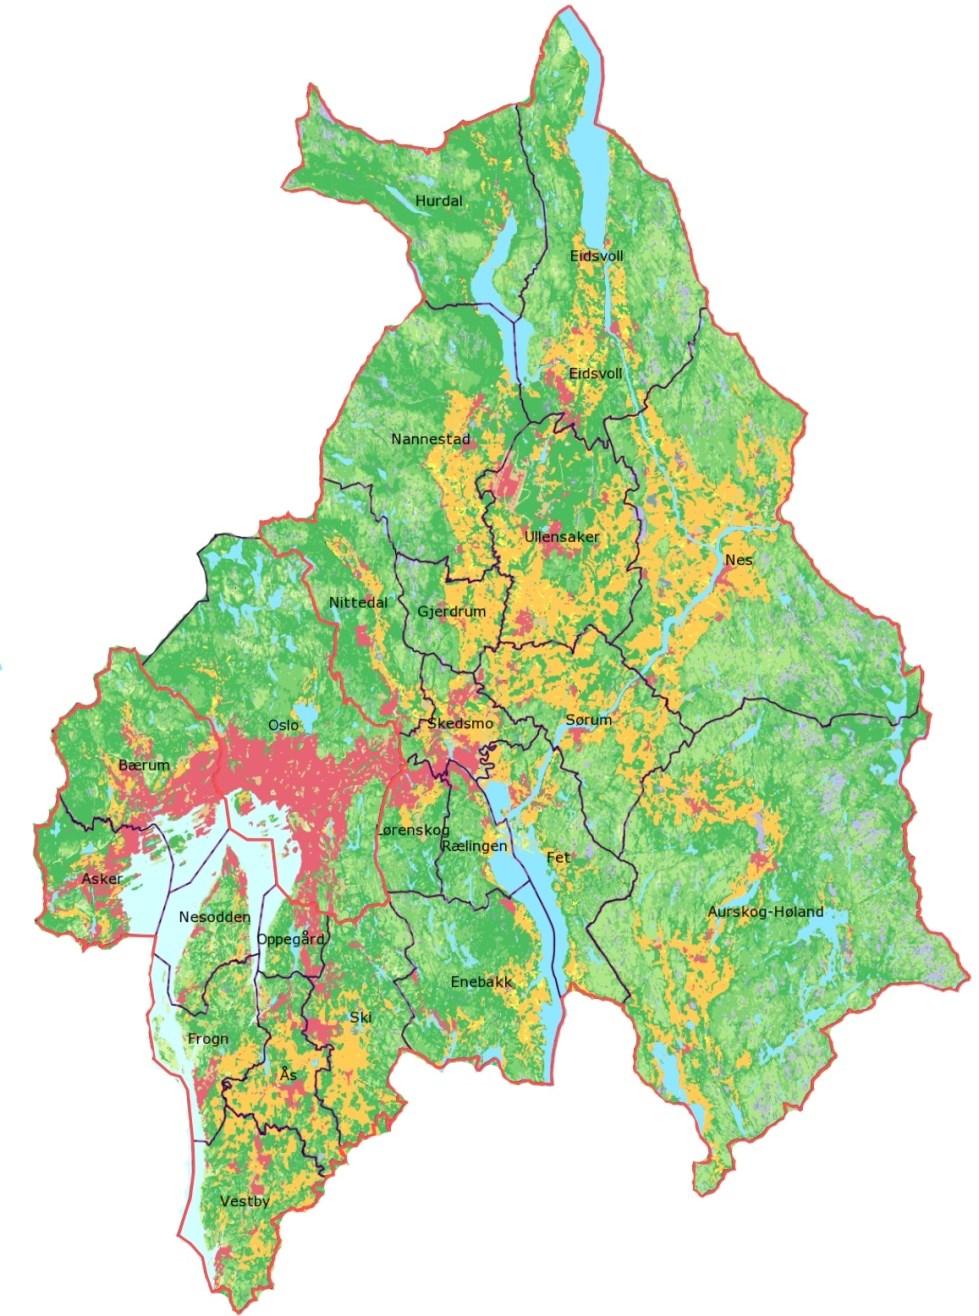 1 Jordbruket i Oslo og Akershus Oslo og Akershus sammen med Østfold er Norges kornkammer. Kartet i Figur 1.1 gir en oversikt over arealbruk i Oslo og Akershus.